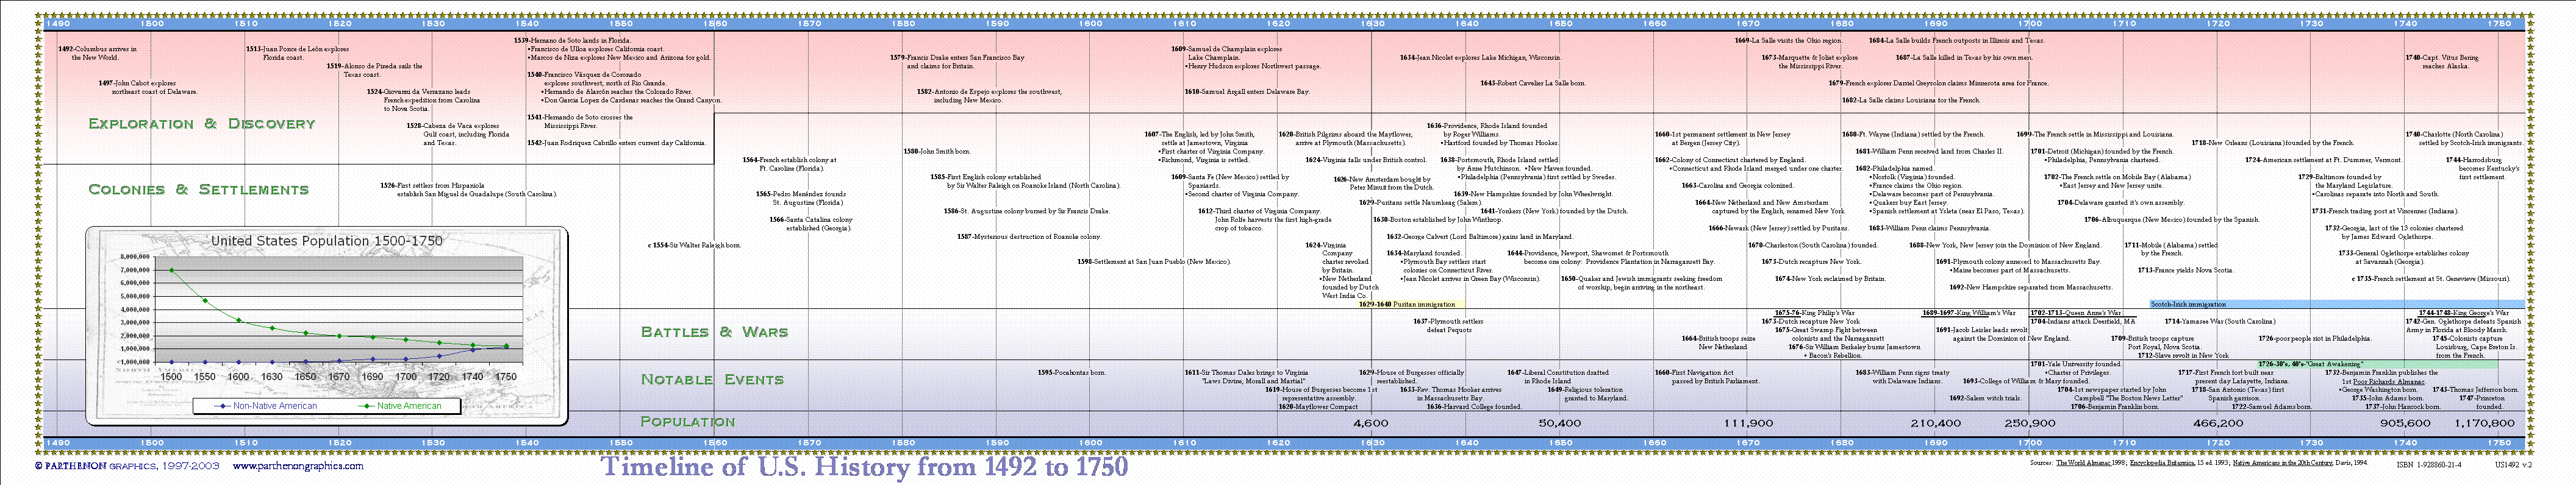 Canadian History Timeline For Kids